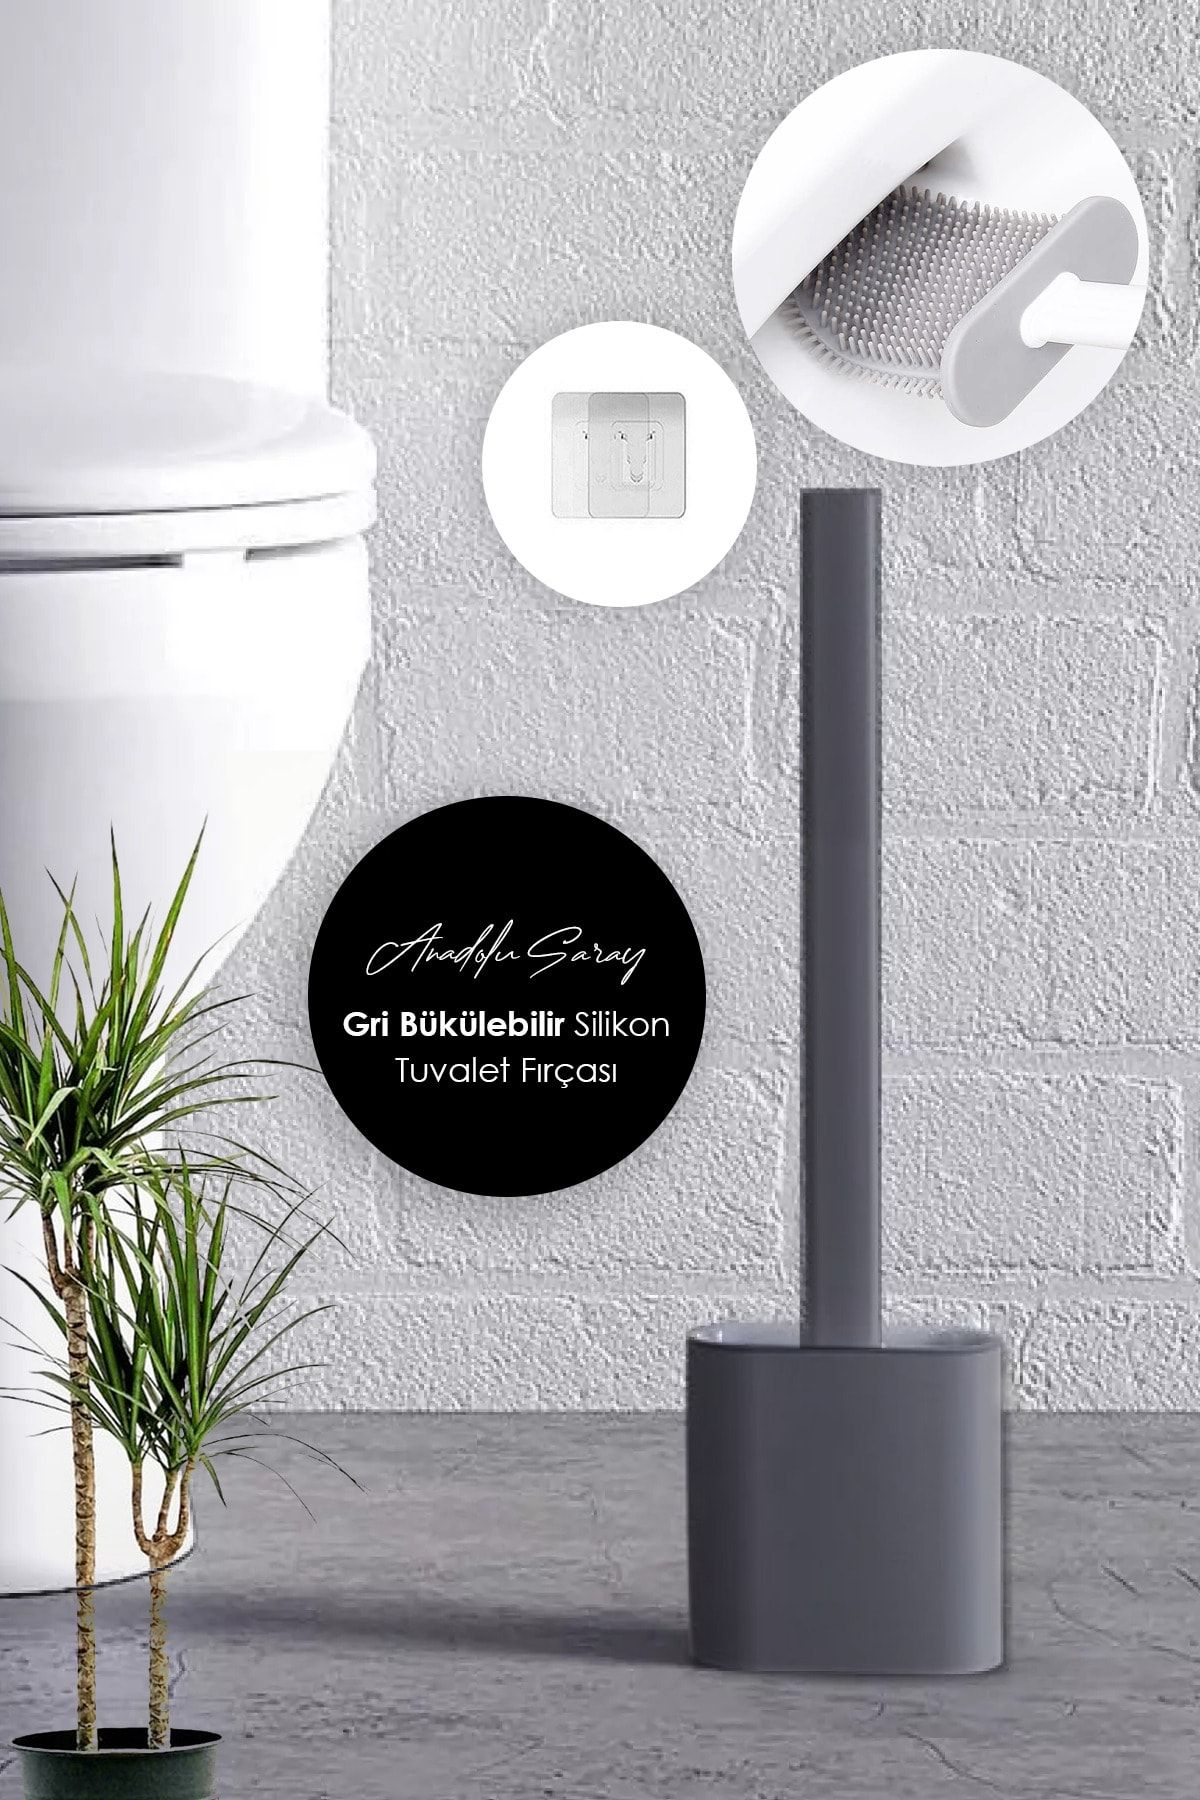 Anadolu Saray Çarşısı Gri Renk Silikon Baysa Tuvalet Fırçası | Bükülebilir Pratik Silikon Wc Klozet Fırçası